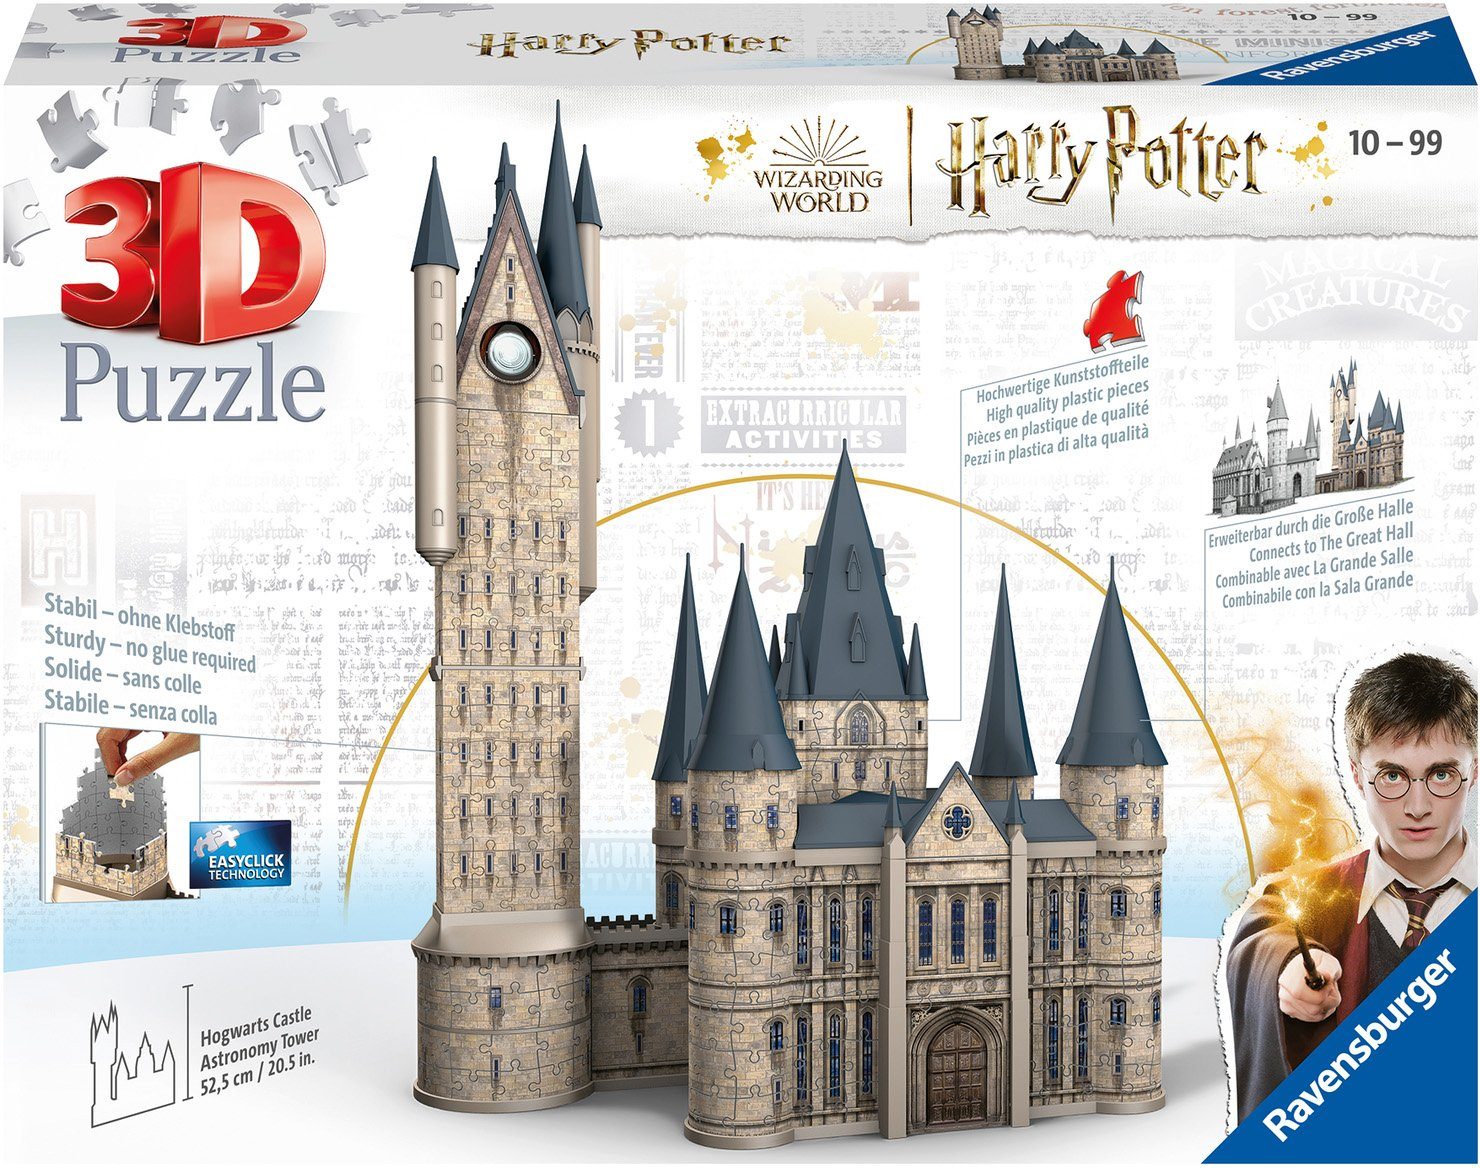 FSC® - - Puzzleteile, weltweit Astronomieturm, Potter 3D-Puzzle 540 Ravensburger Schloss in schützt Wald Hogwarts Europe, - Made Harry